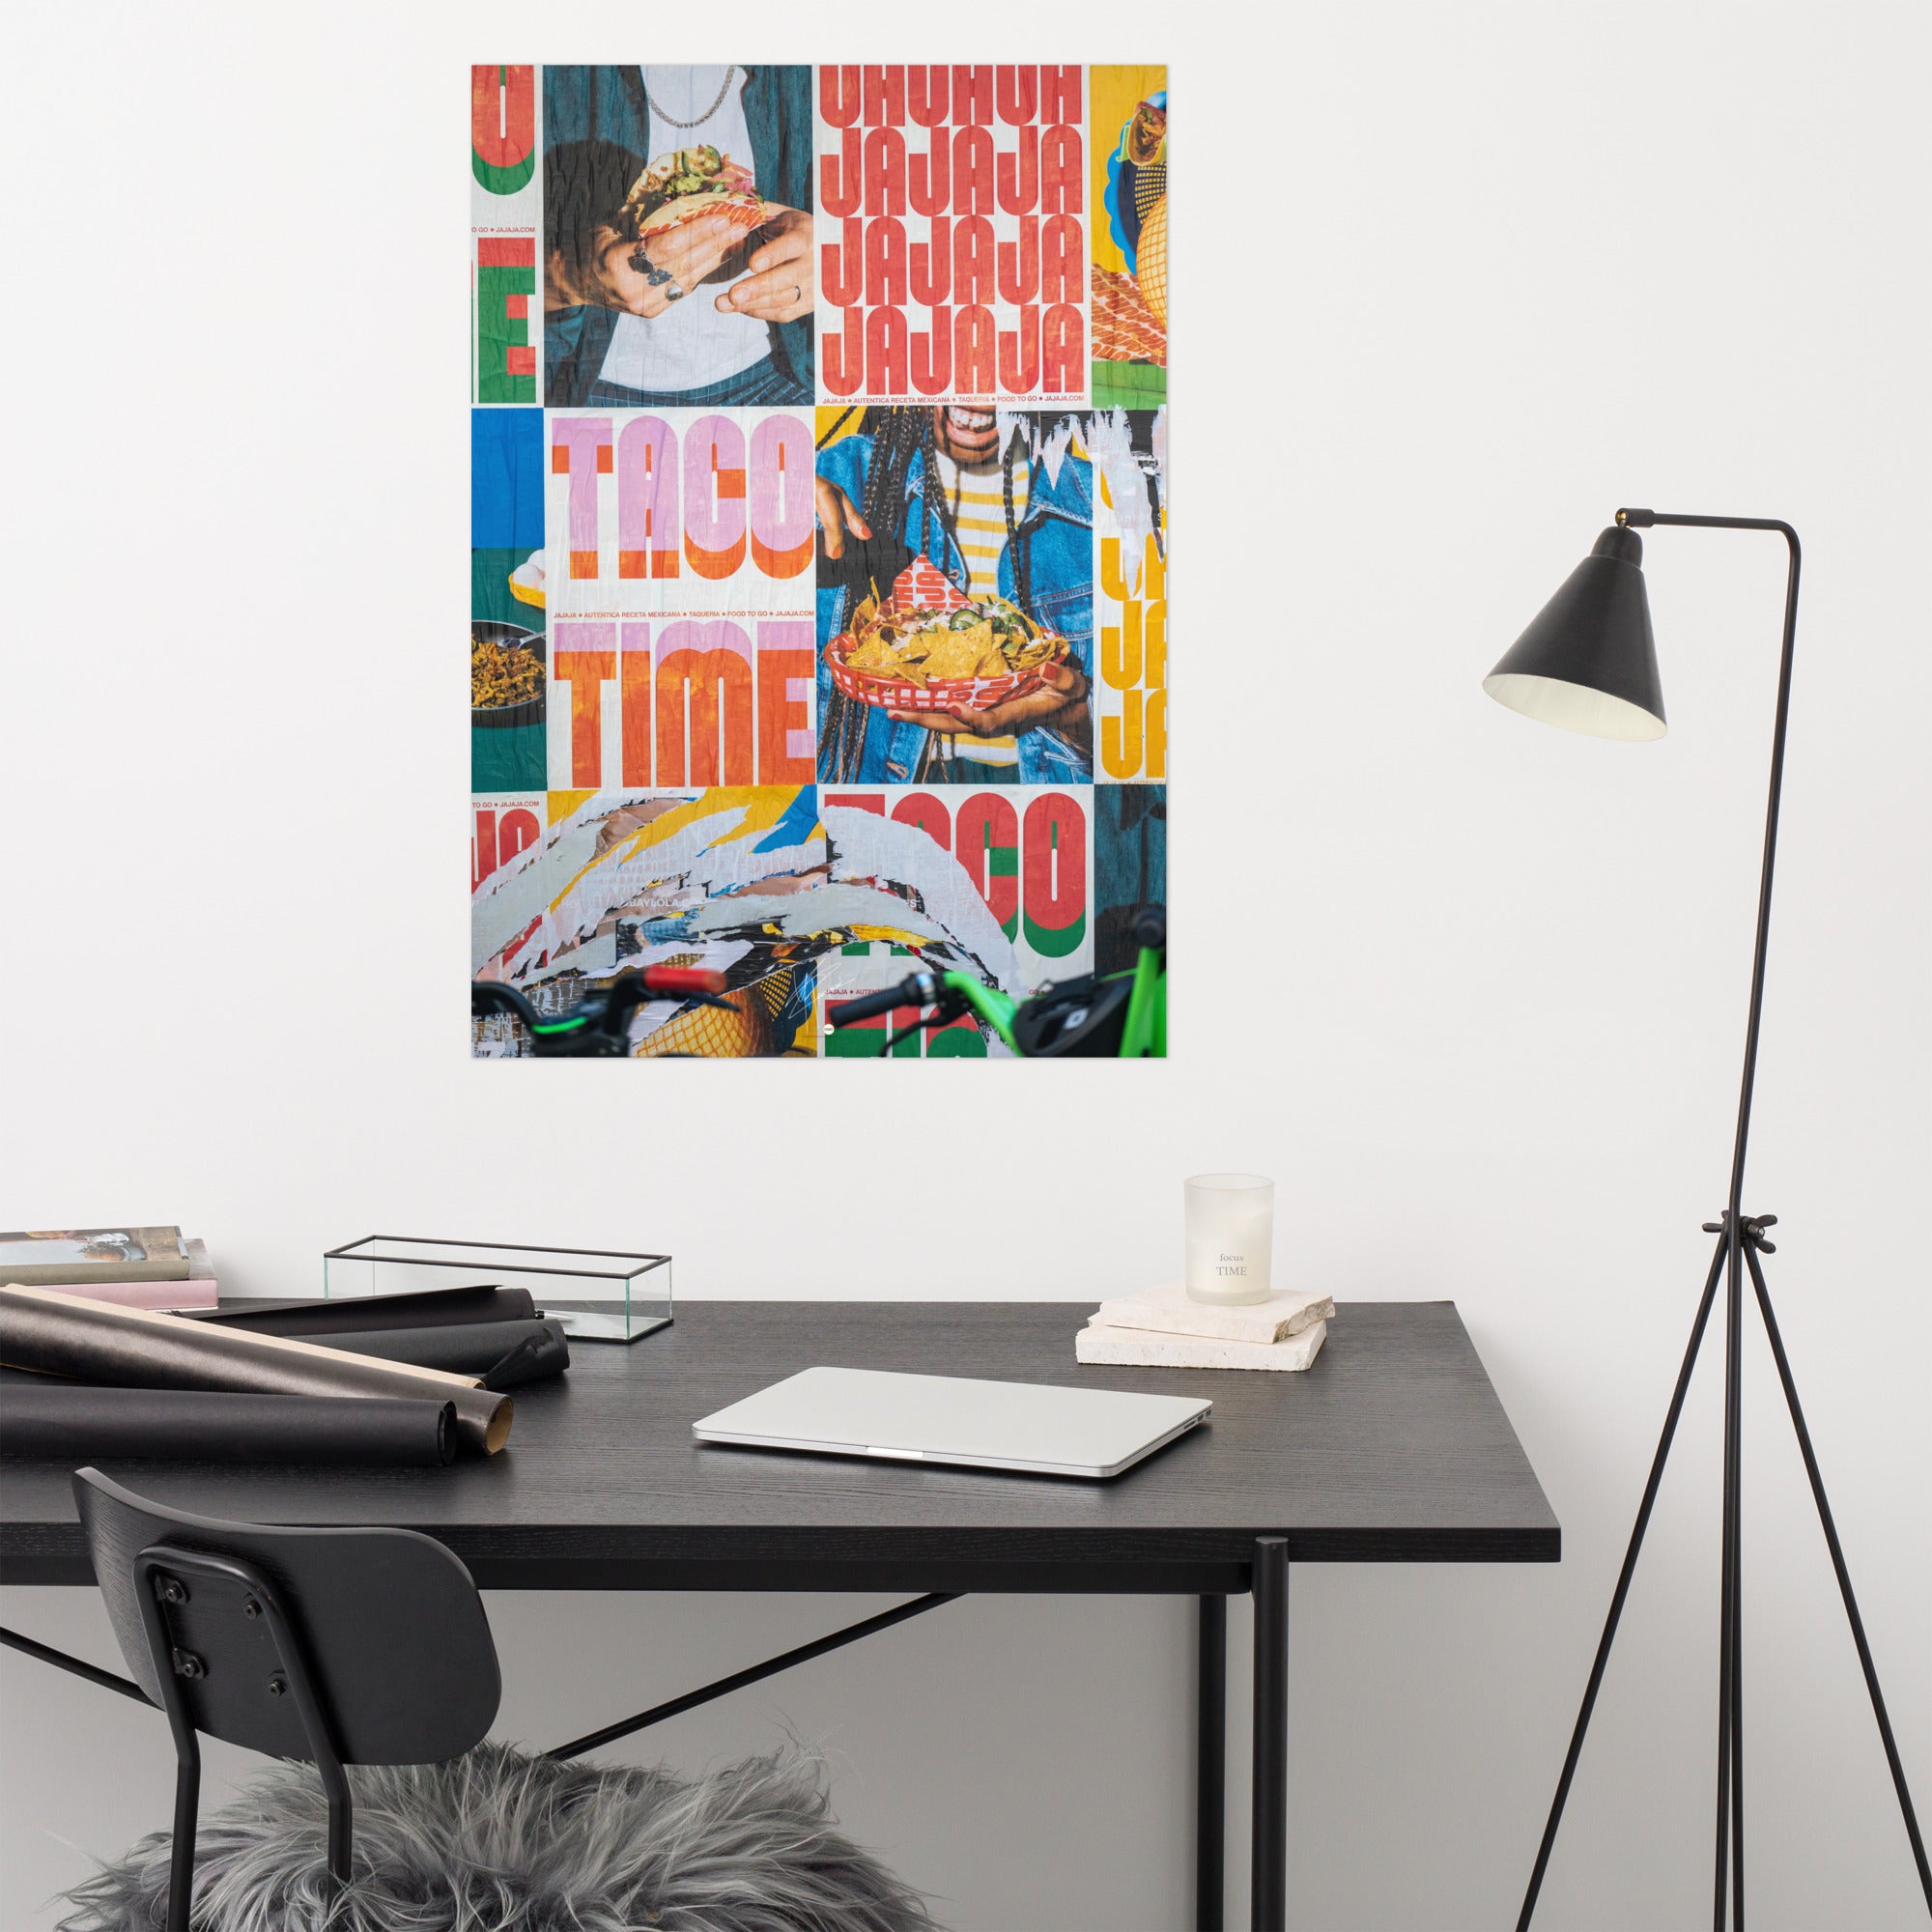 Photographie en couleur 'Jajaja', affichant des publicités animées pour 'Tacos Time' avec des images de tacos et de tortillas chips.